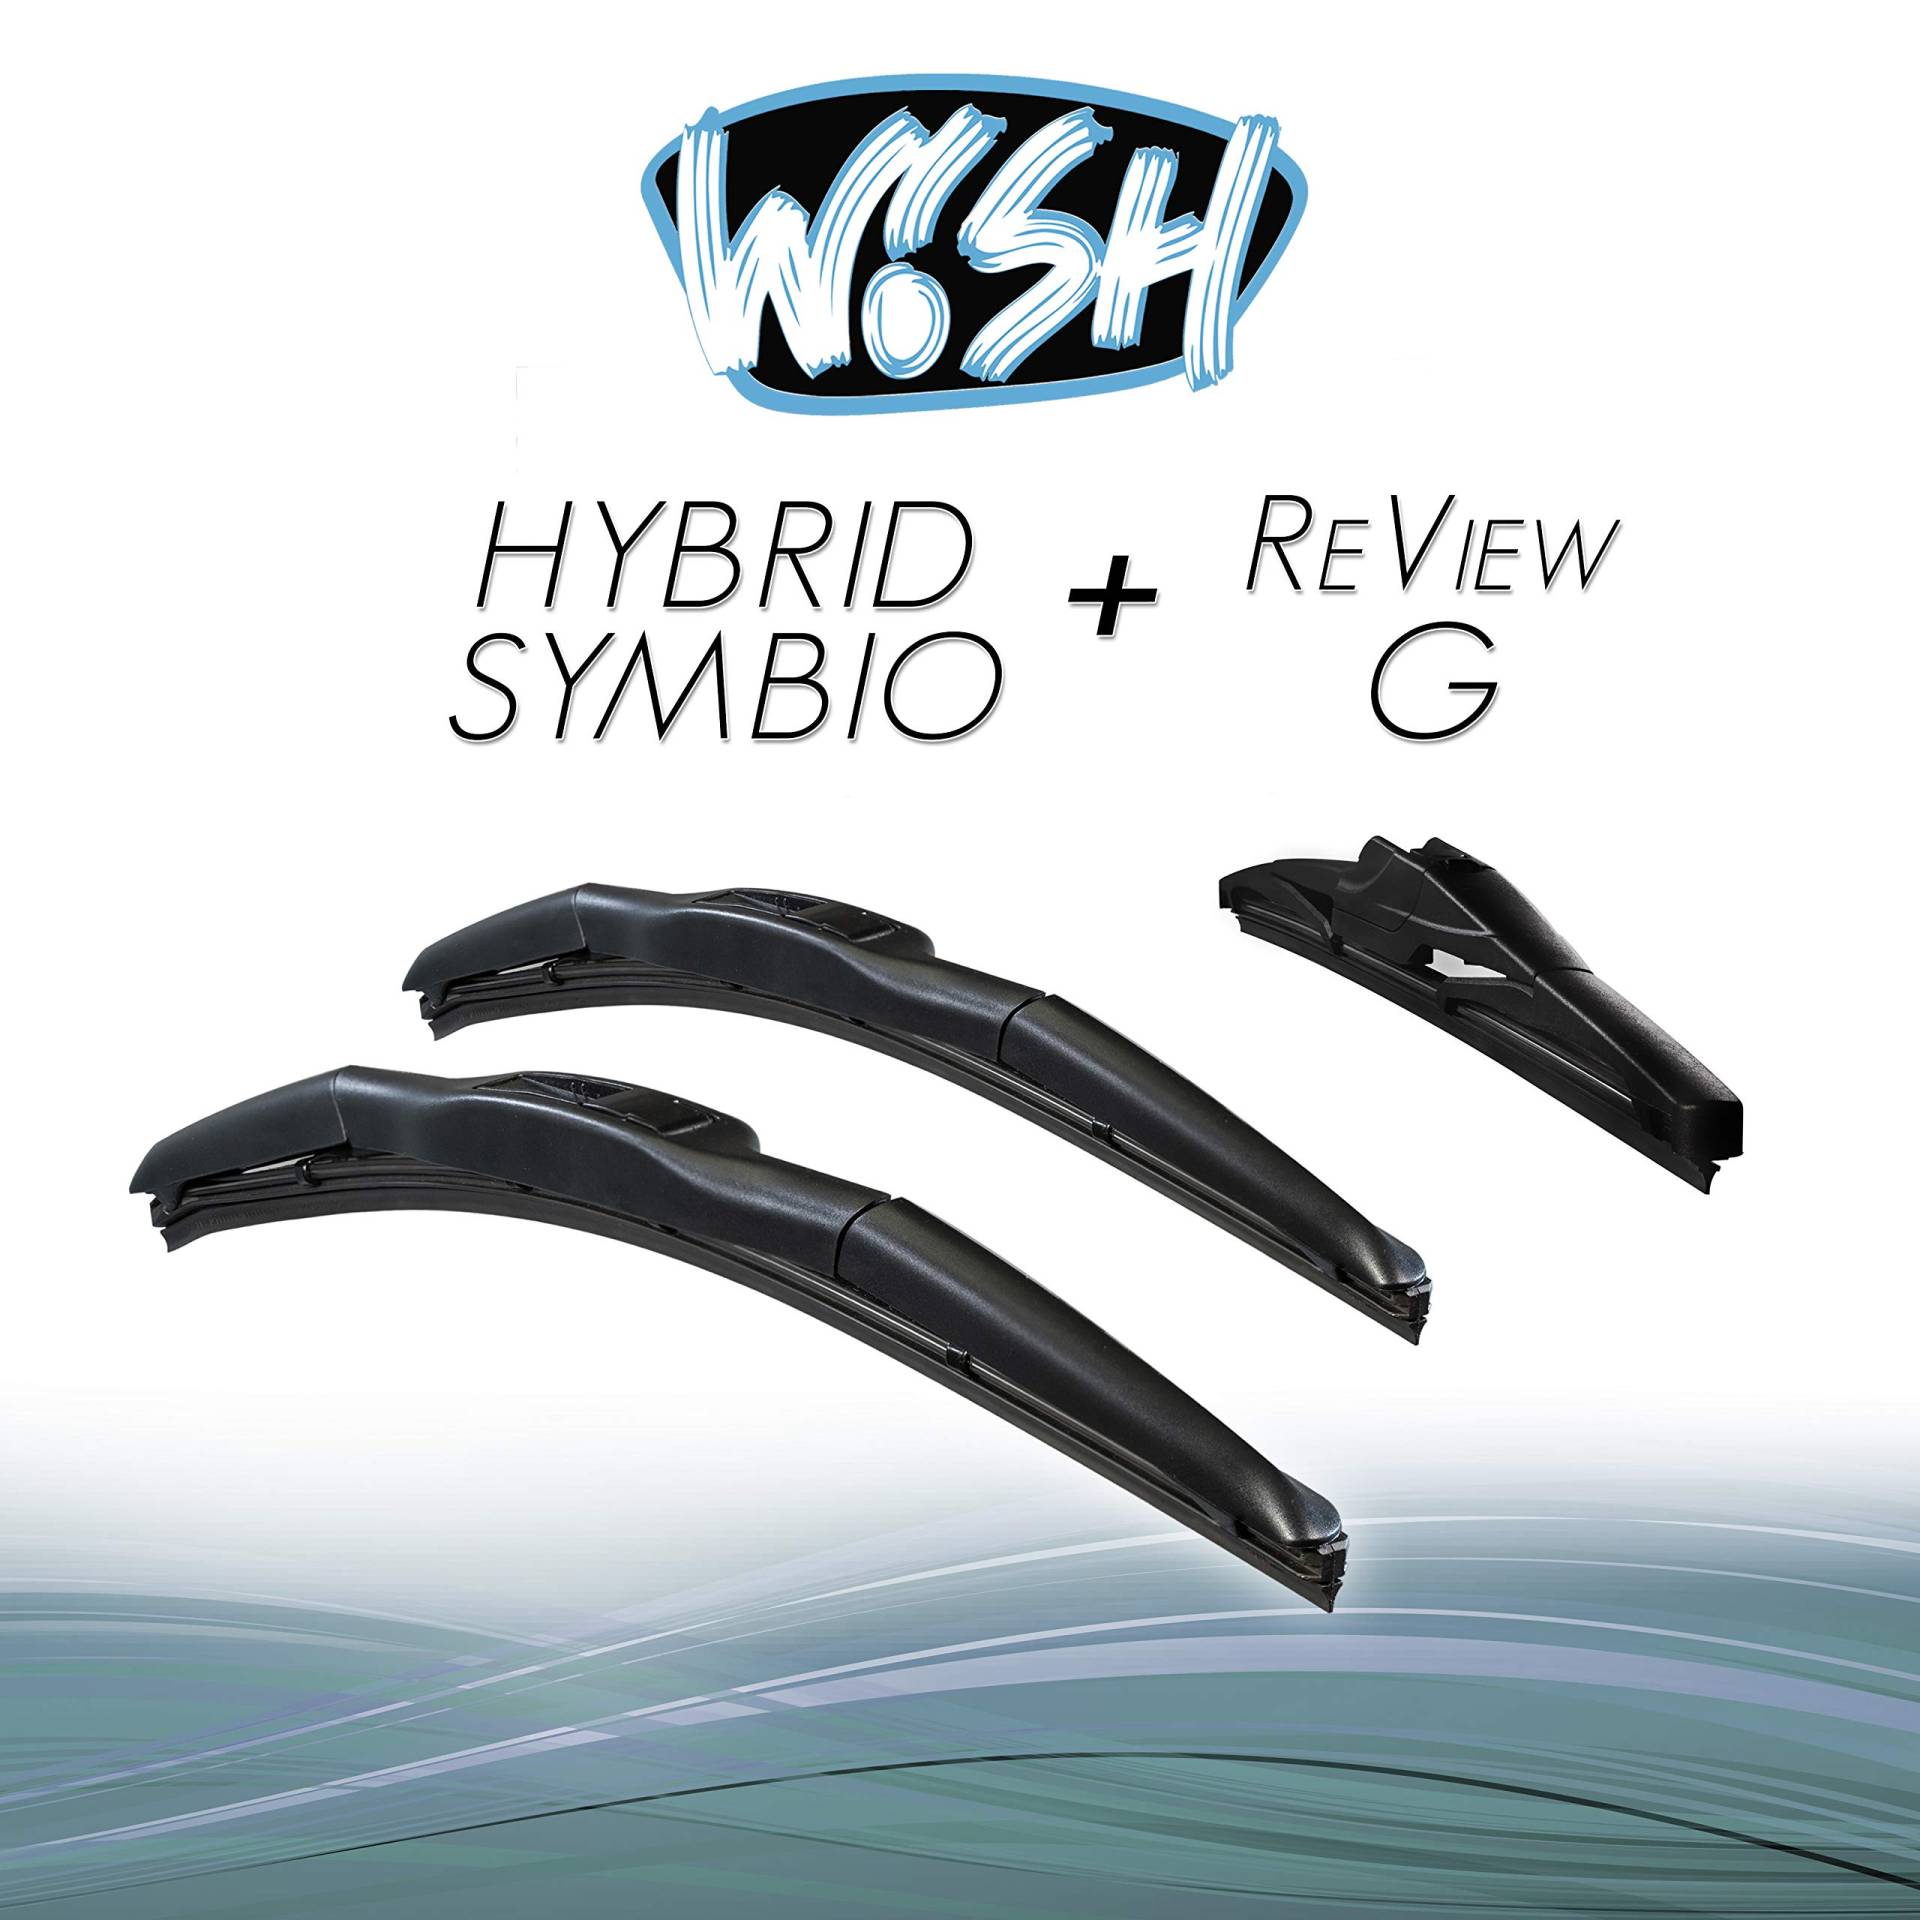 Wish® Hybrid Symbio Satz Front + Heck Scheibenwischer Länge: 22" 550mm / 16" 400mm / 12" 300mm Wischblätter Vorne und Hinten Hybrid-Scheibenwischer + Review G HS22.16.12RG von Wish